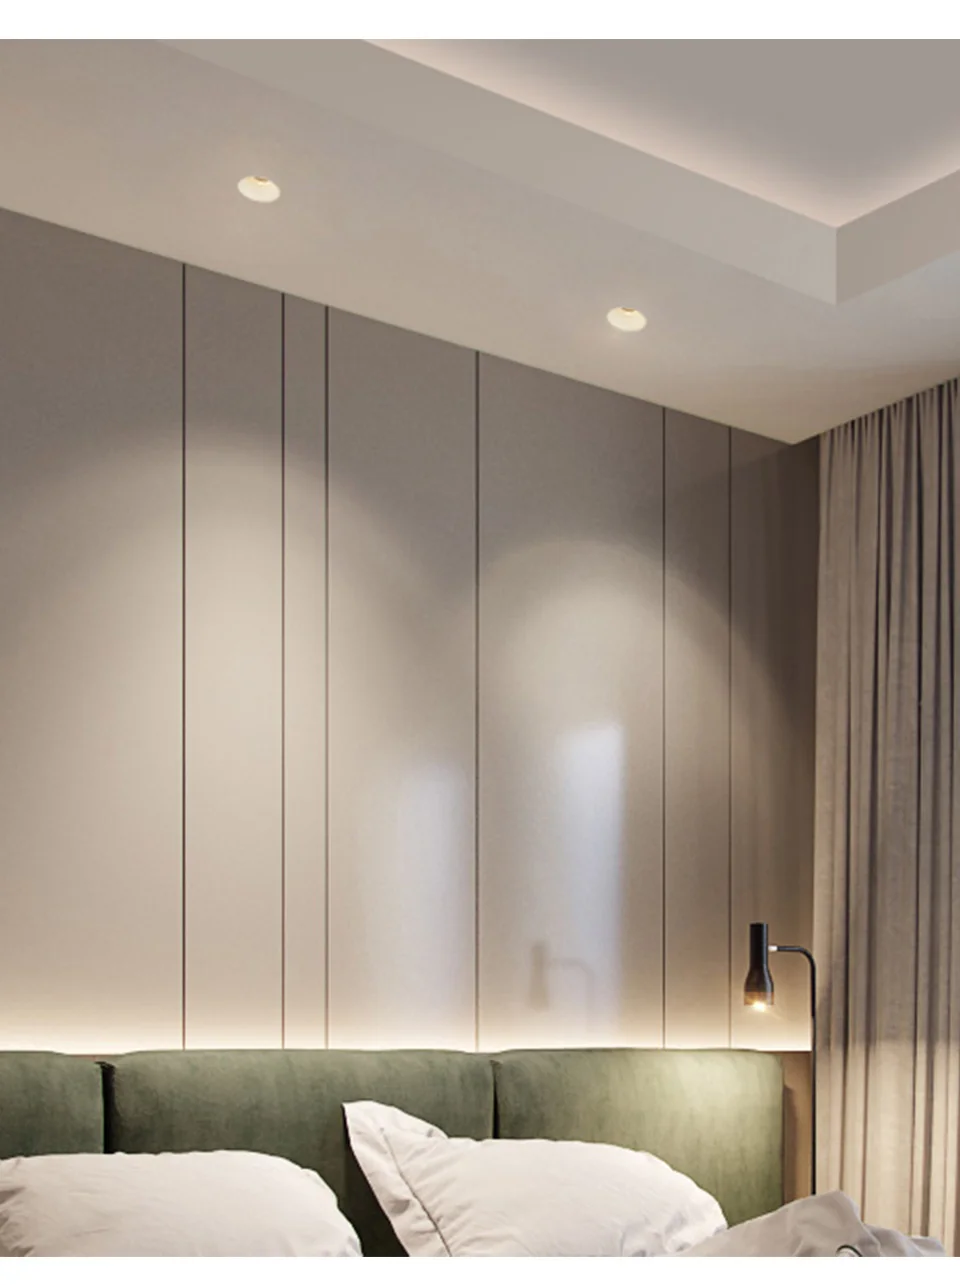 Aisilan современный светодиодный встраиваемый потолочный светильник, безрамный встроенный Точечный светильник, Минималистичная удобная установка для гостиной спальни